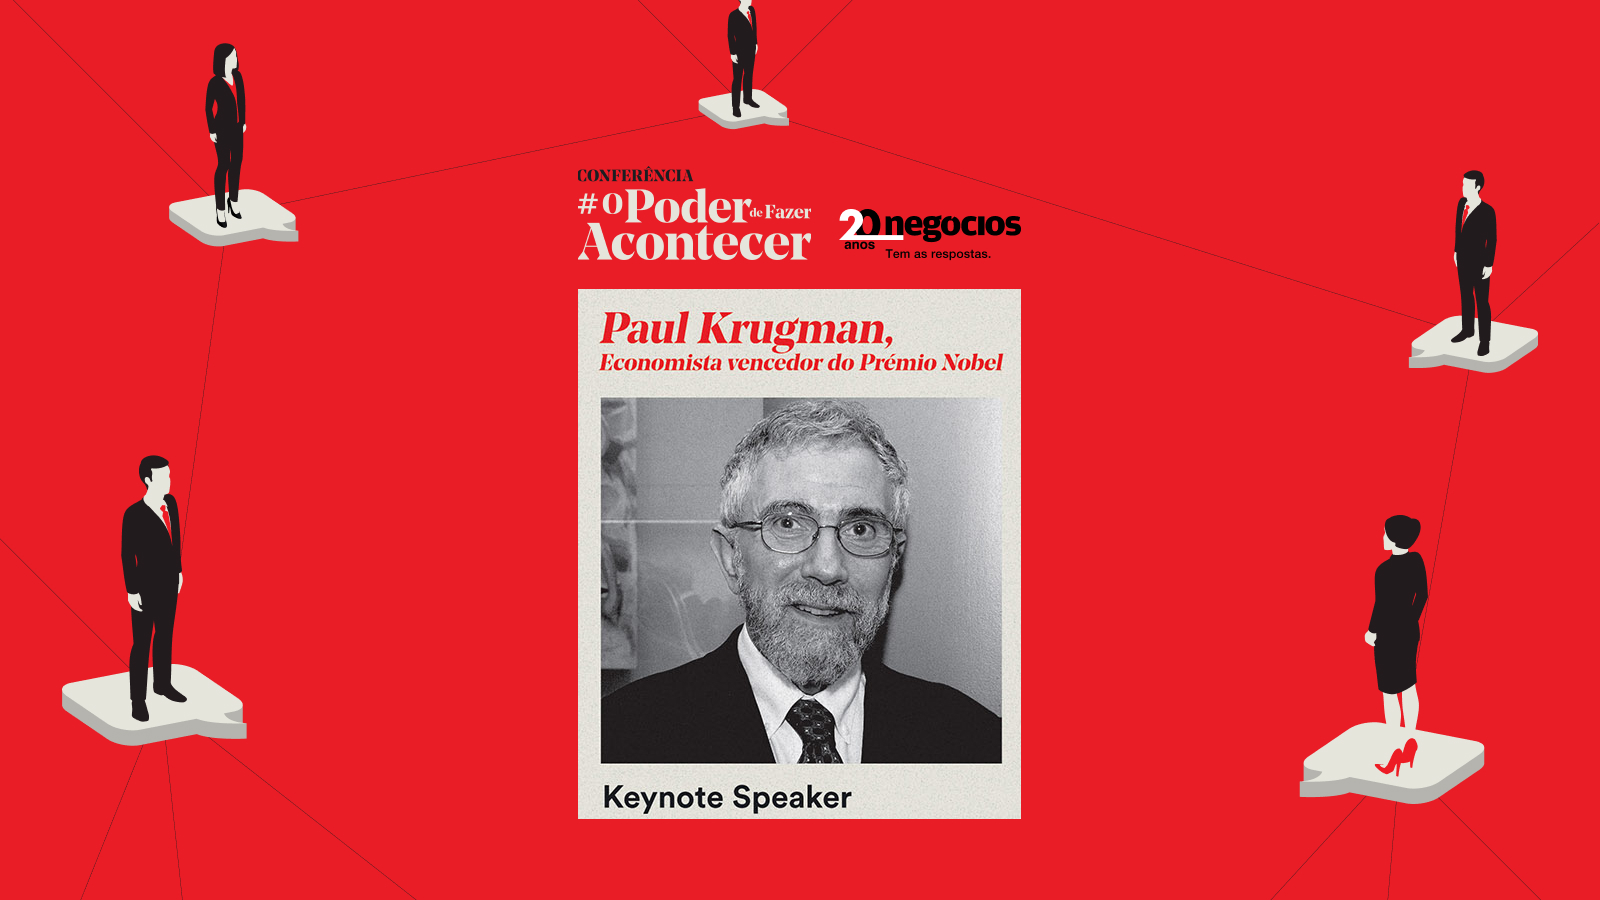 paul-krugman-hoje-em-conferencia-nos-20-anos-de-negocios